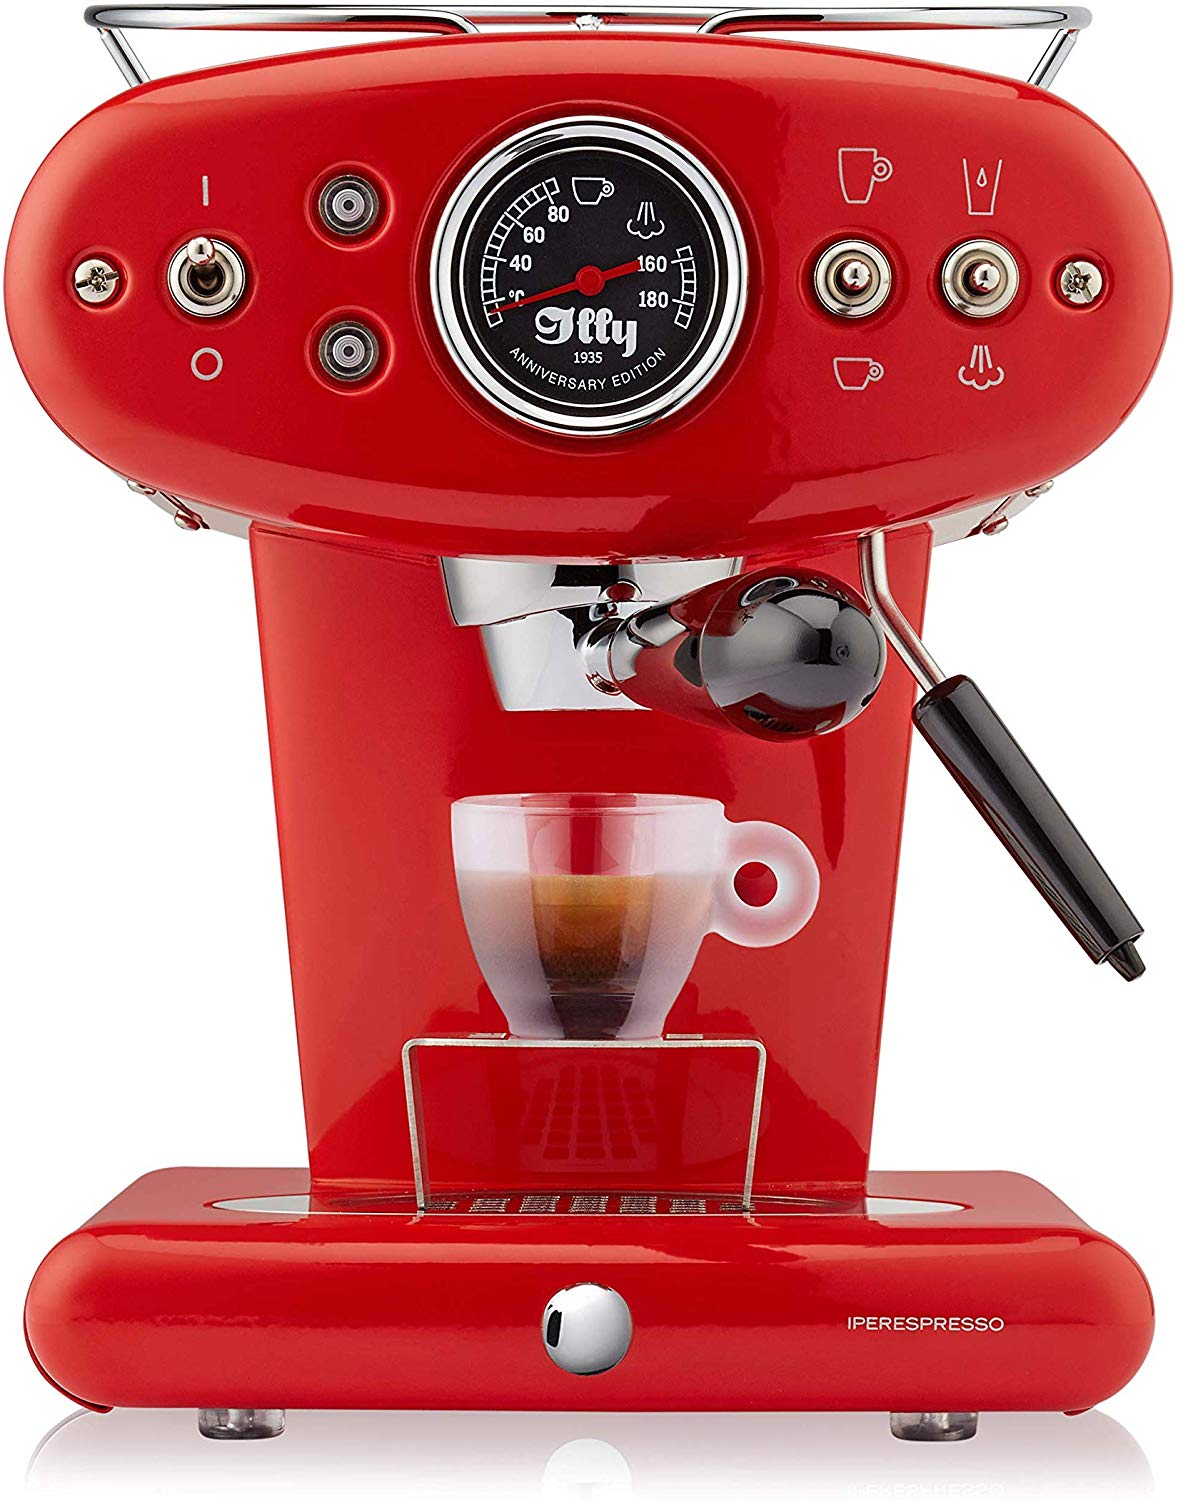 illy Francis Francis Coffee Machine Espresso In Capsules Ipere Spresso X1 Annive